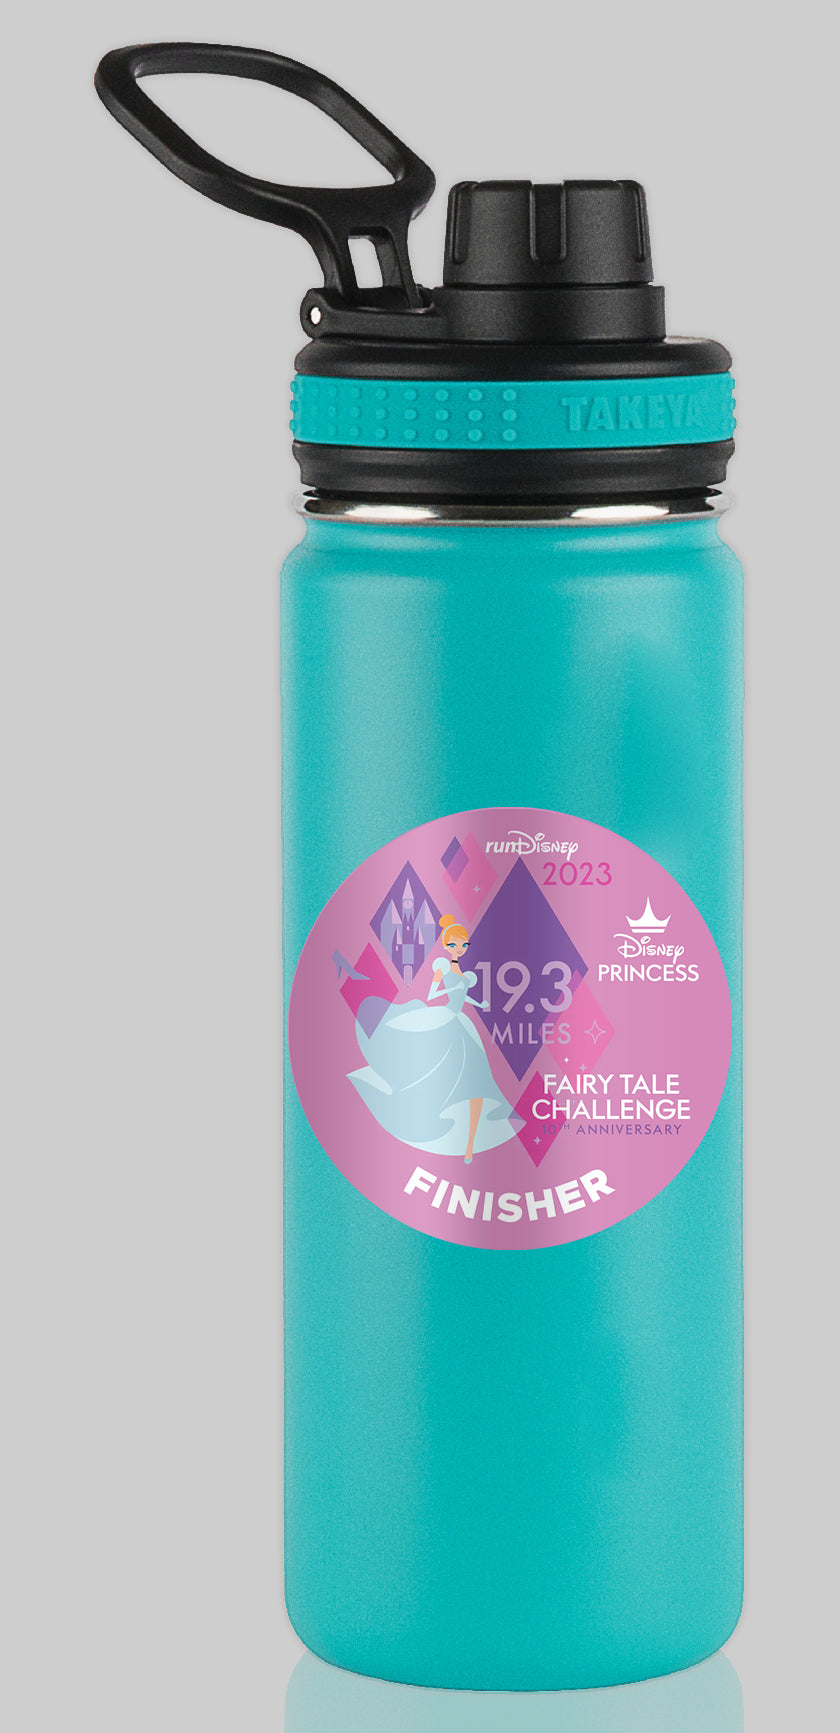 RunDisney Princess Half Marathon Weekend 2023 Princess Fairy Tale Challenge 19.3 Miles FINISHER Water Bottle Mug Sticker